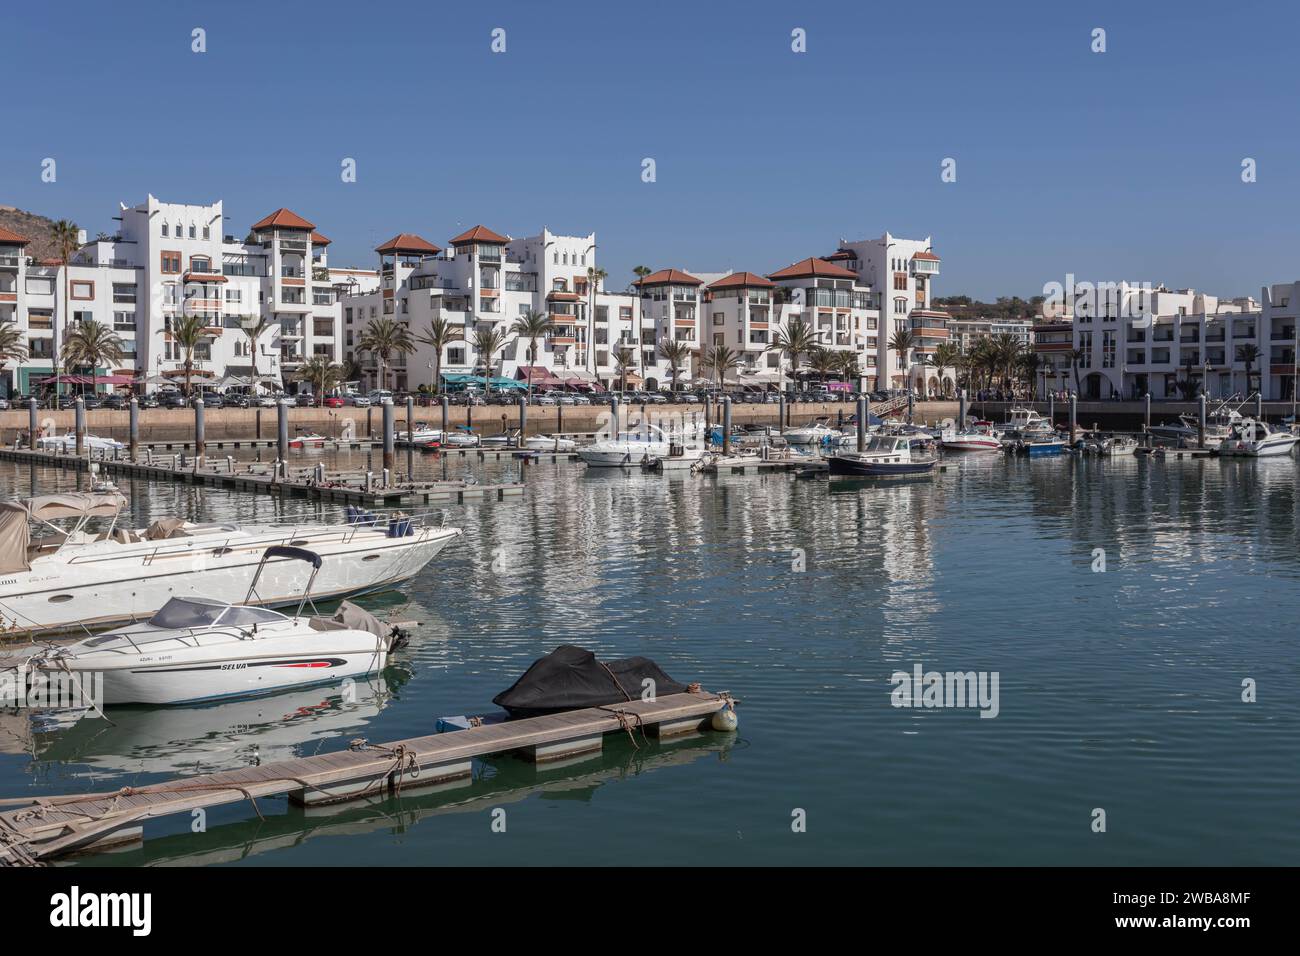 The marina in Agadir, Morocco Stock Photo